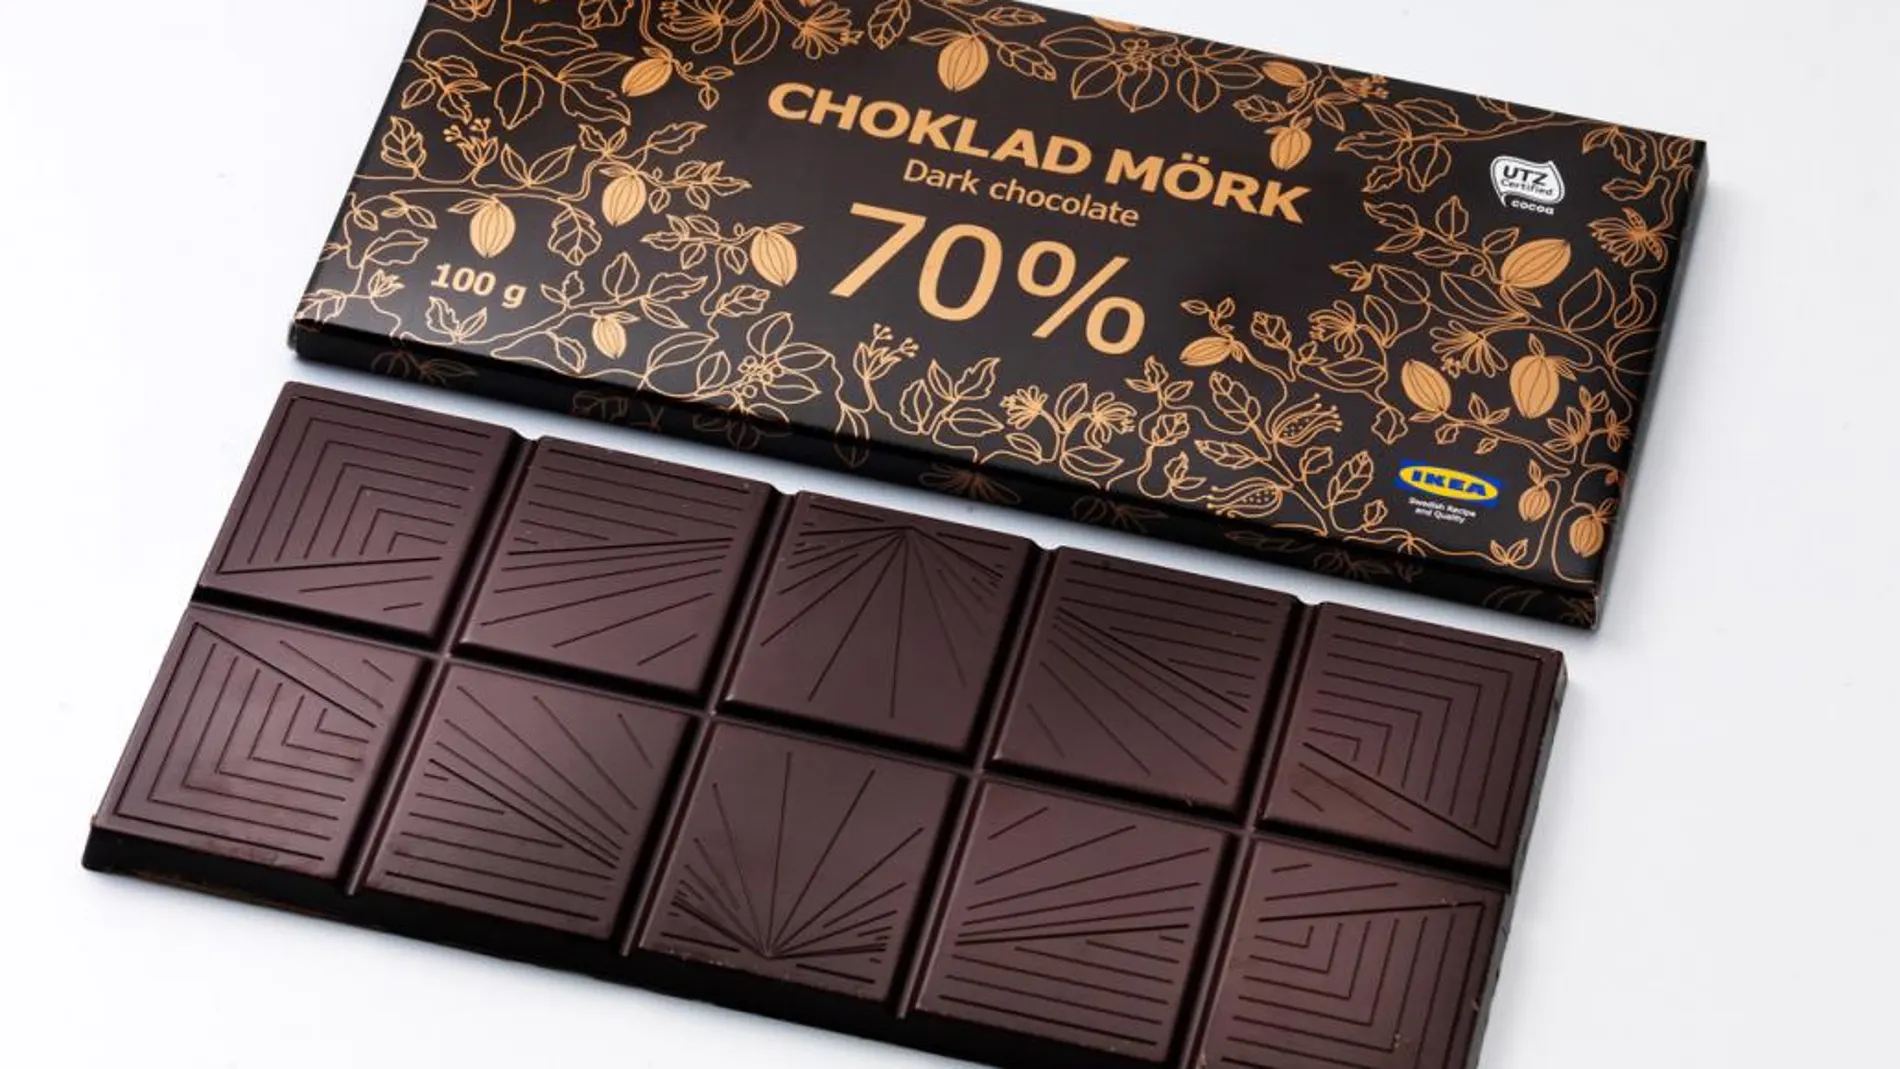 Facua alerta de la retirada del chocolate Choklad Mörk de Ikea